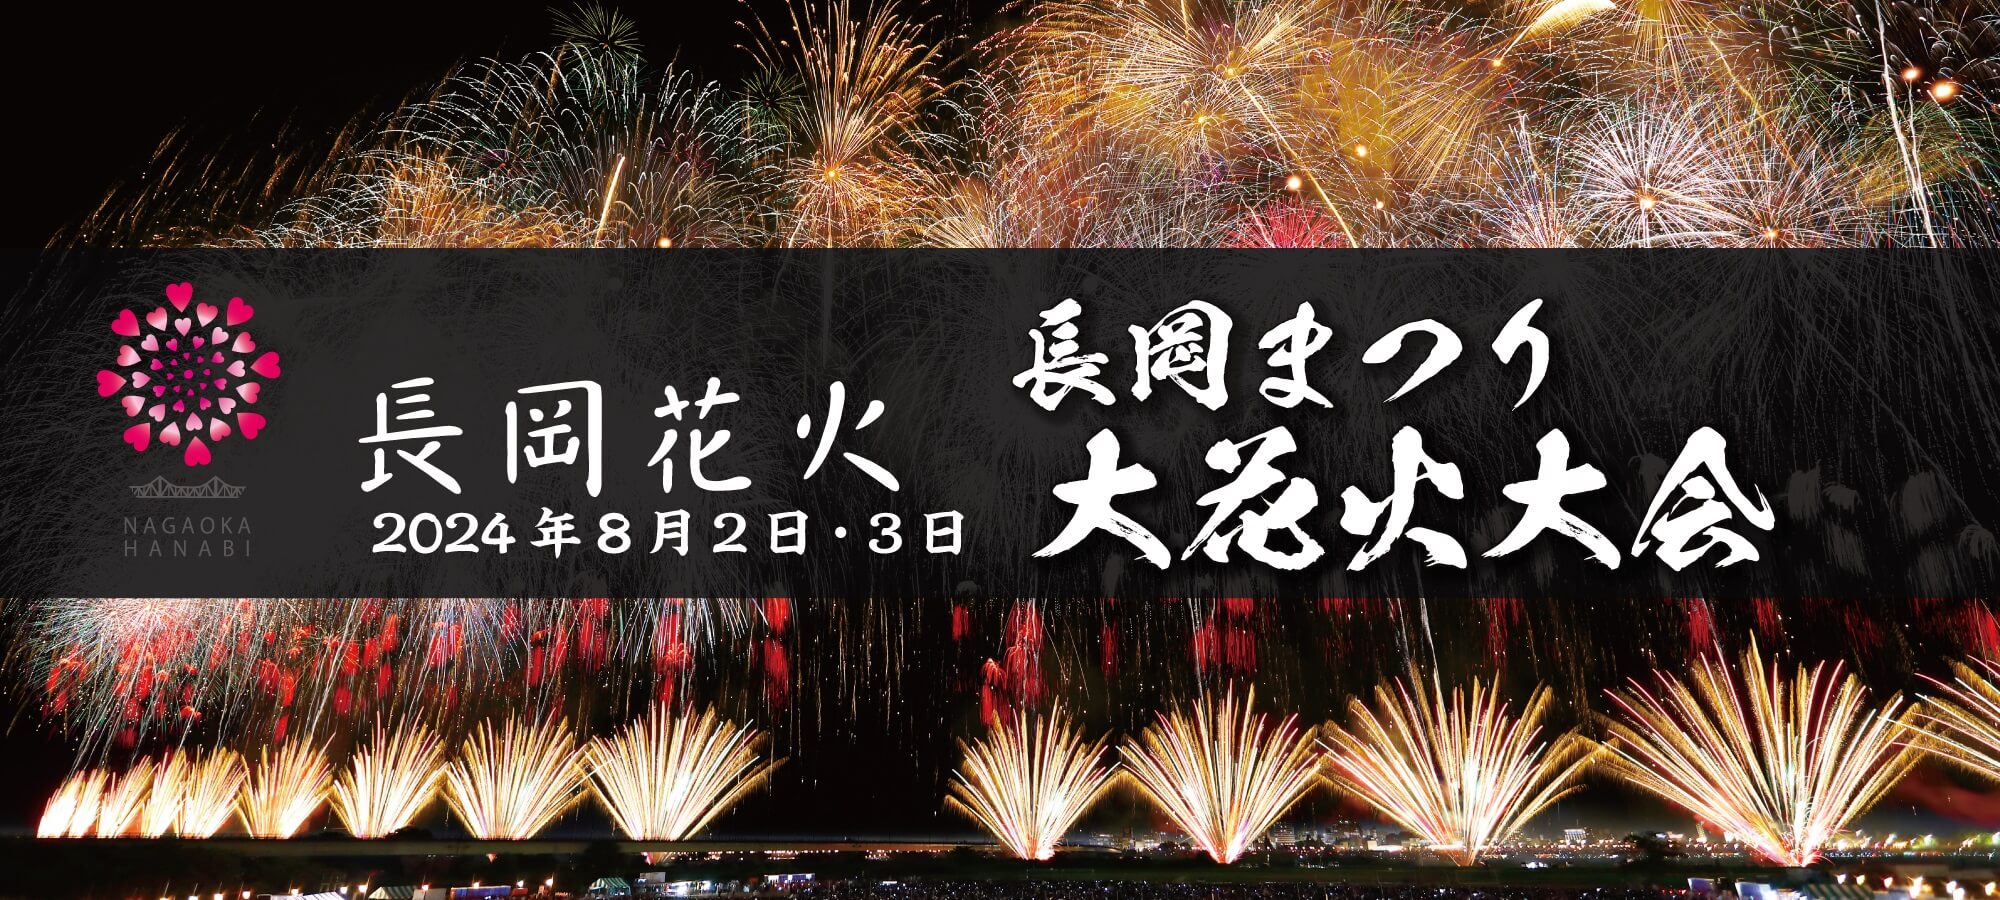 長岡花火チケット 2022 8月3日 2枚 スポンサー席 左岸 長岡インター側